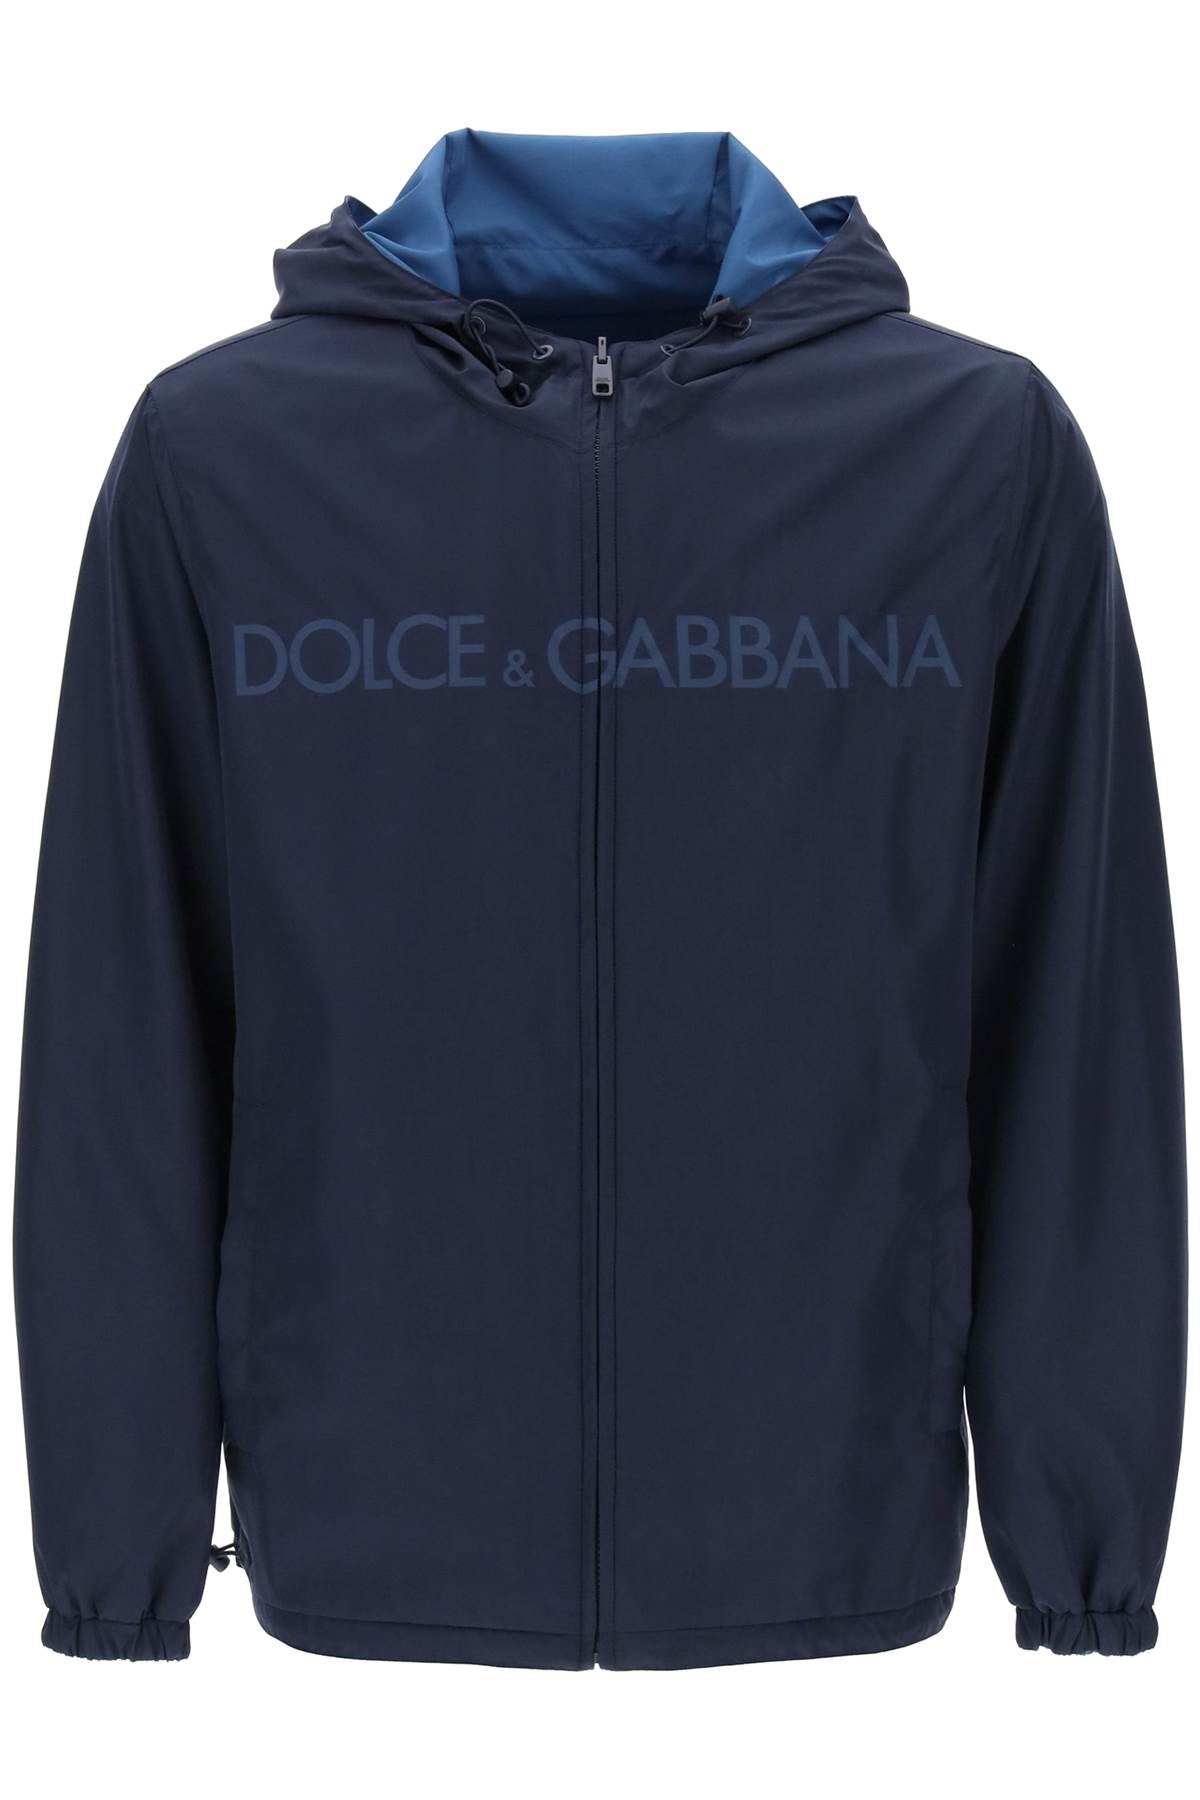 Shop Dolce & Gabbana Reversible Windbreaker Jacket For Men In Blue